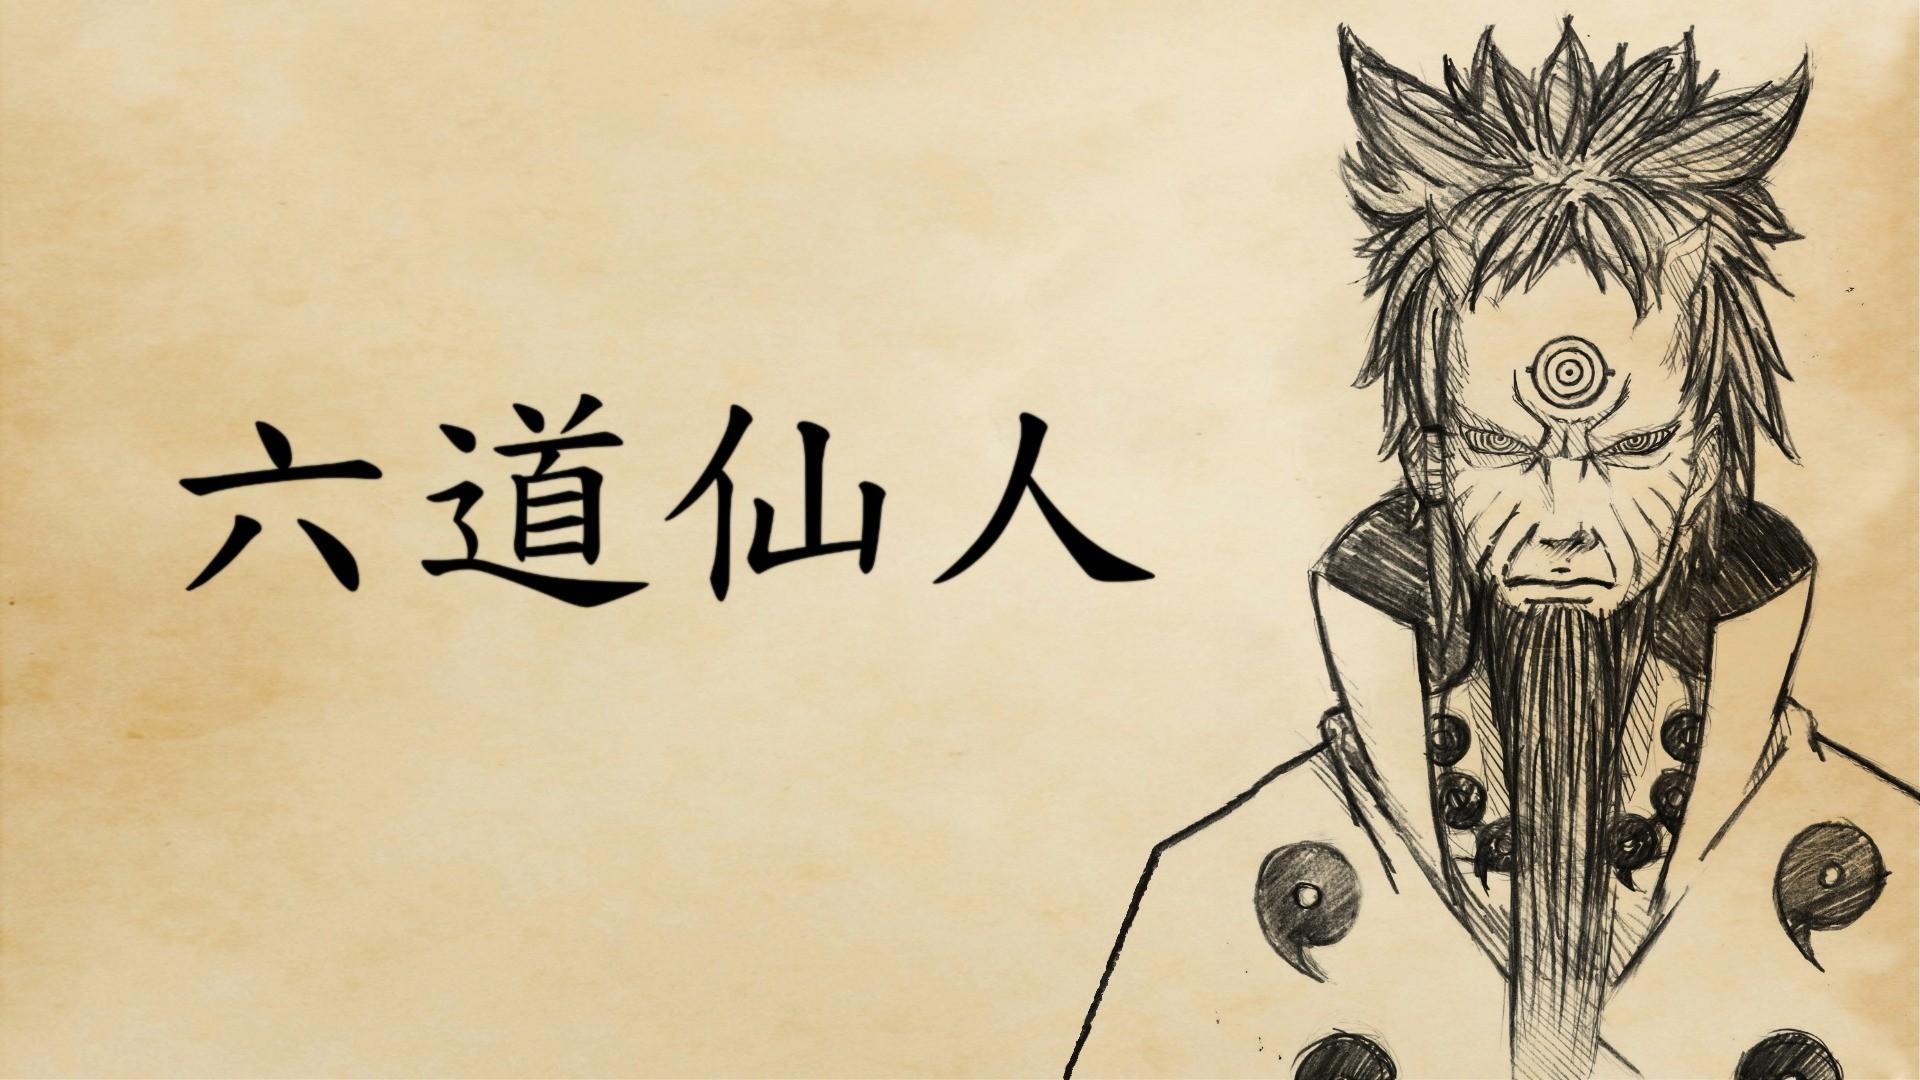 HD wallpaper, Naruto Shippuuden, Hagoromo Ootsutsuki, Rikudou Sennin, Sage Of Six Paths